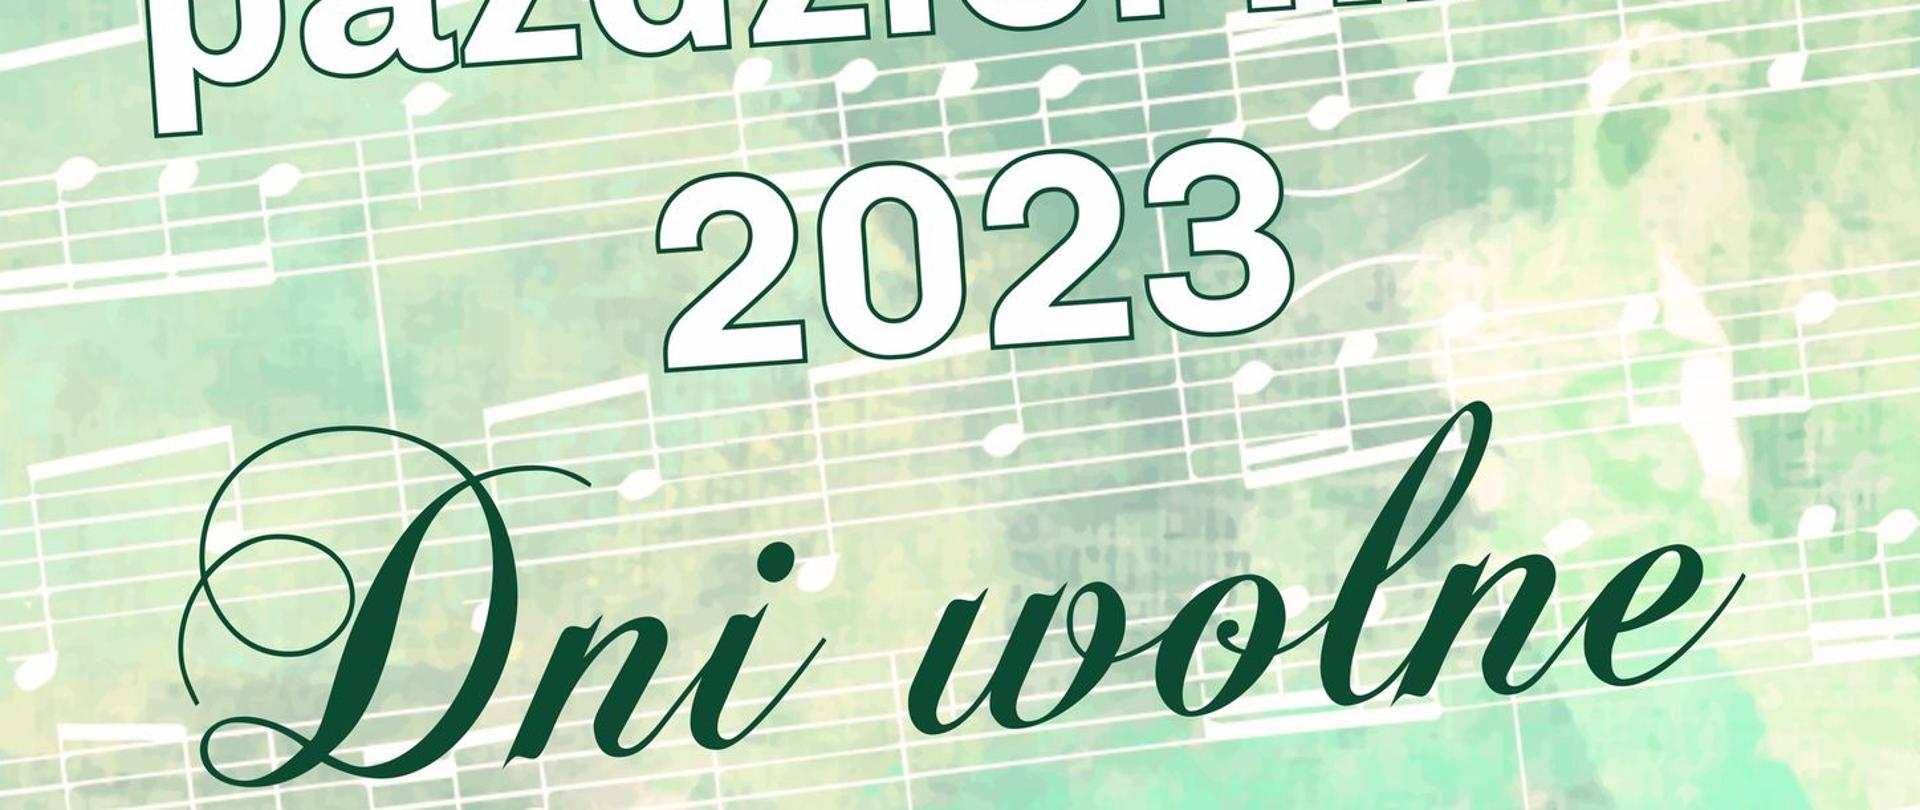 Plakat na zielonym tle z wzorem nutowym. Od góry pośrodku logo szkoły a niżej napis 30/31 października 2023 Dni wolne